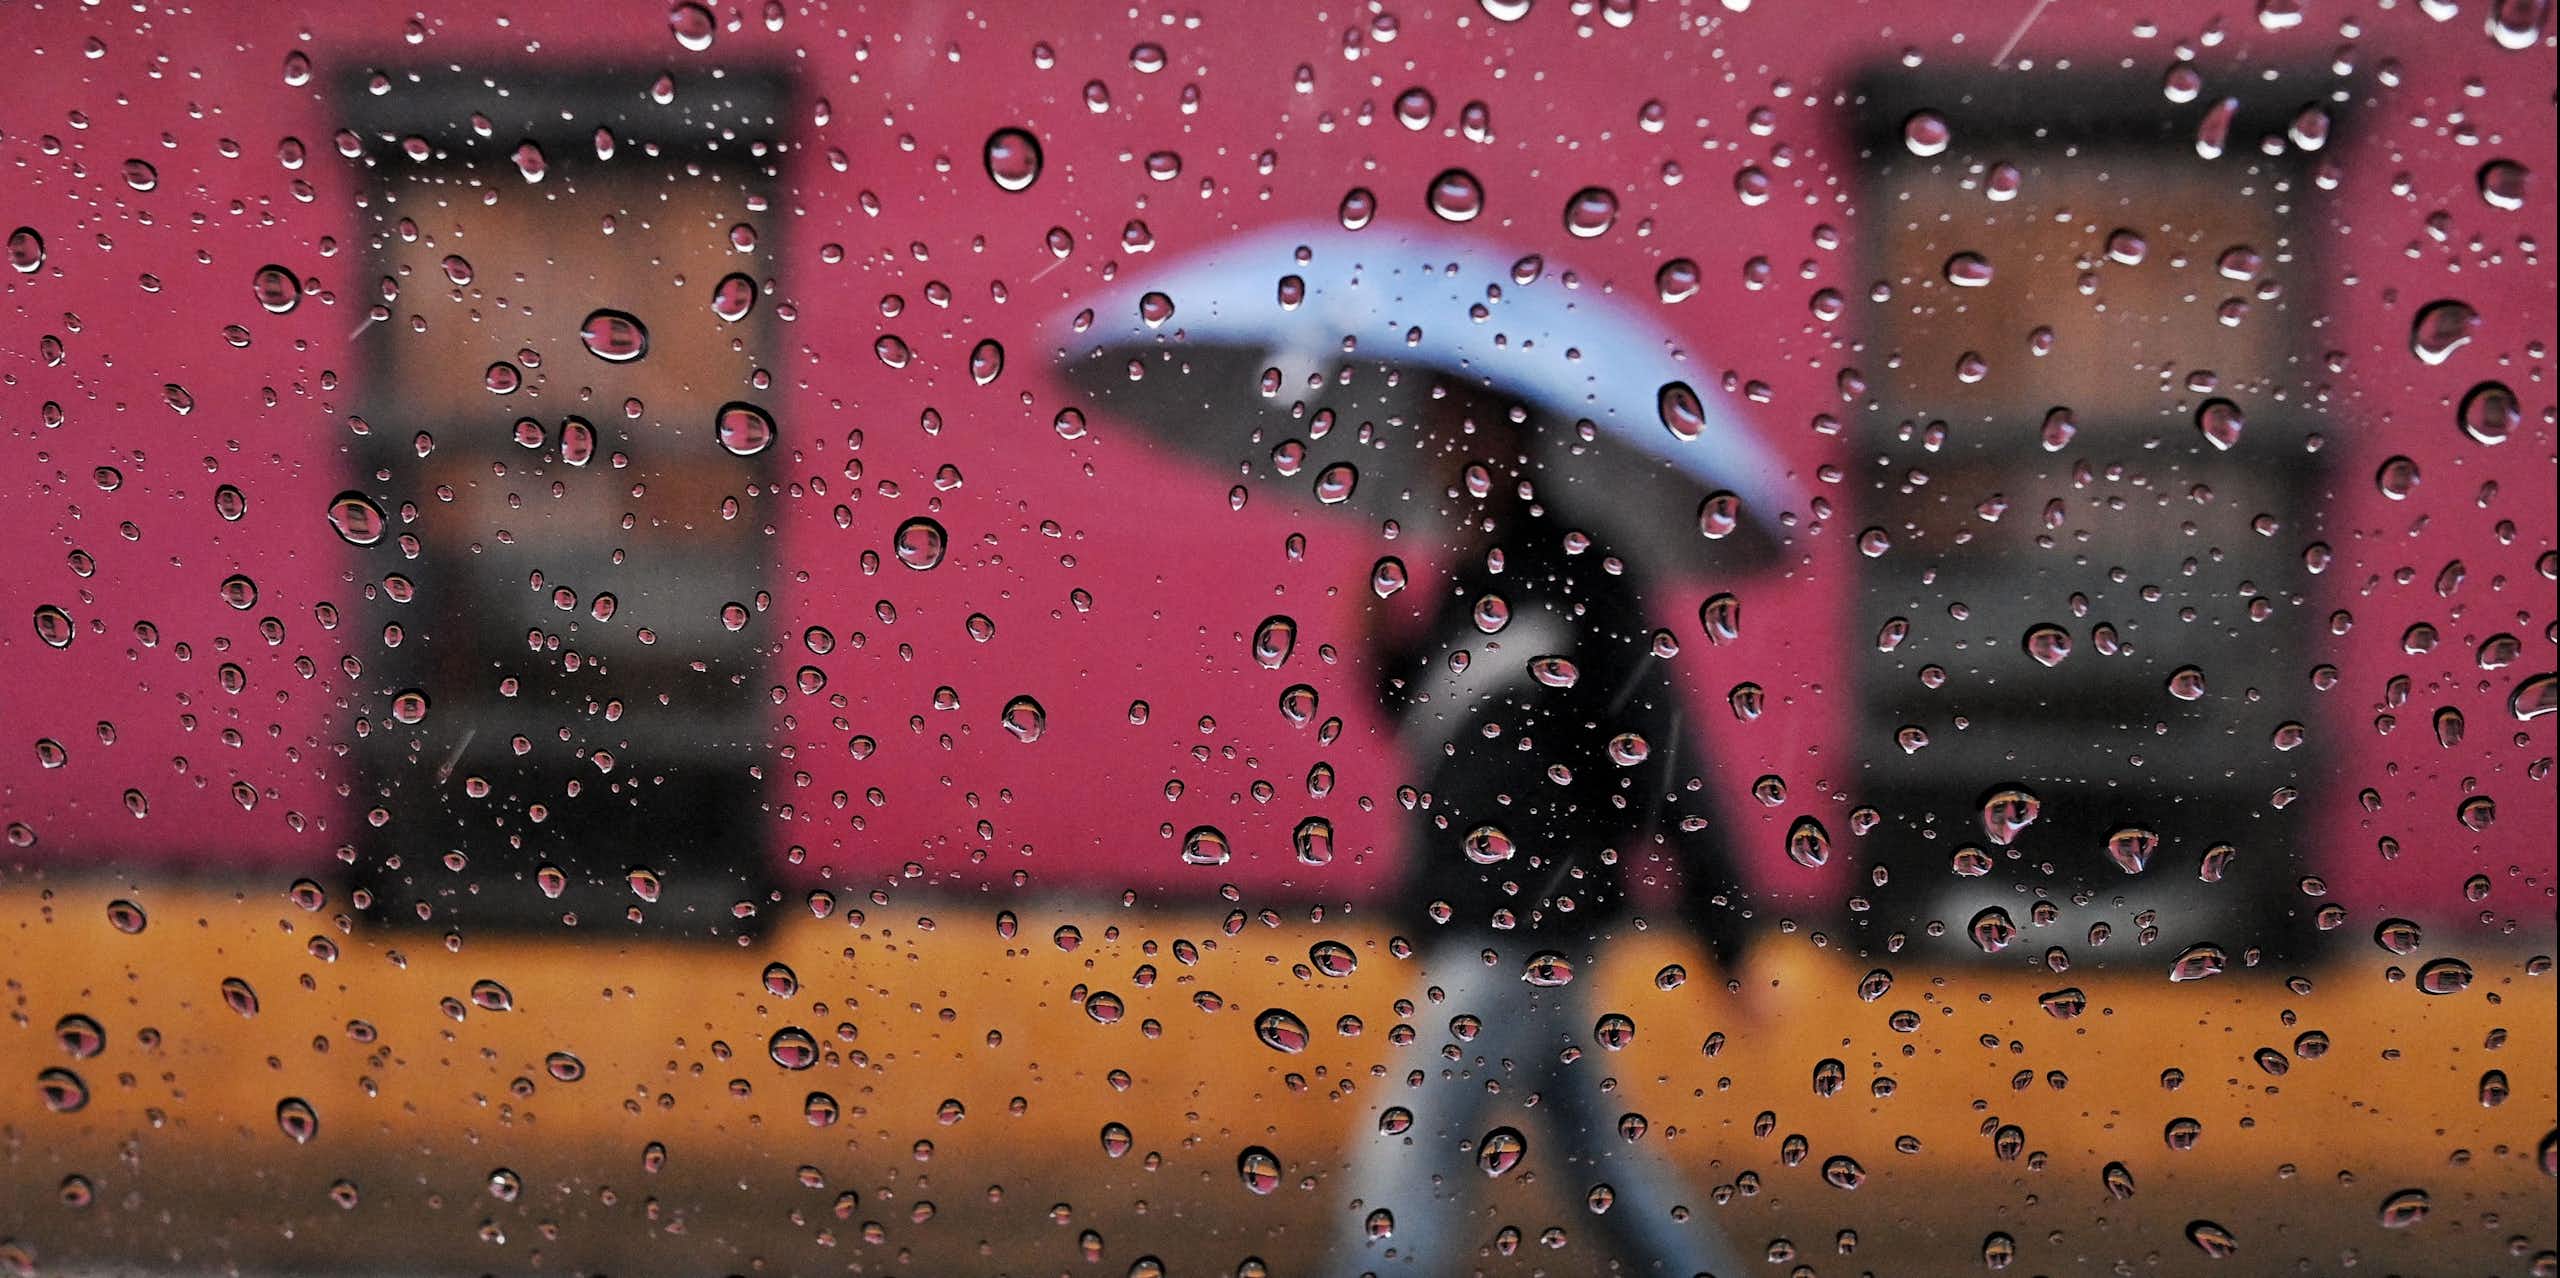 Une personne marche sous la pluie devant des bâtiments aux couleurs vives avec un parapluie. La photo est prise à travers une fenêtre avec des gouttes de pluie sur la vitre.